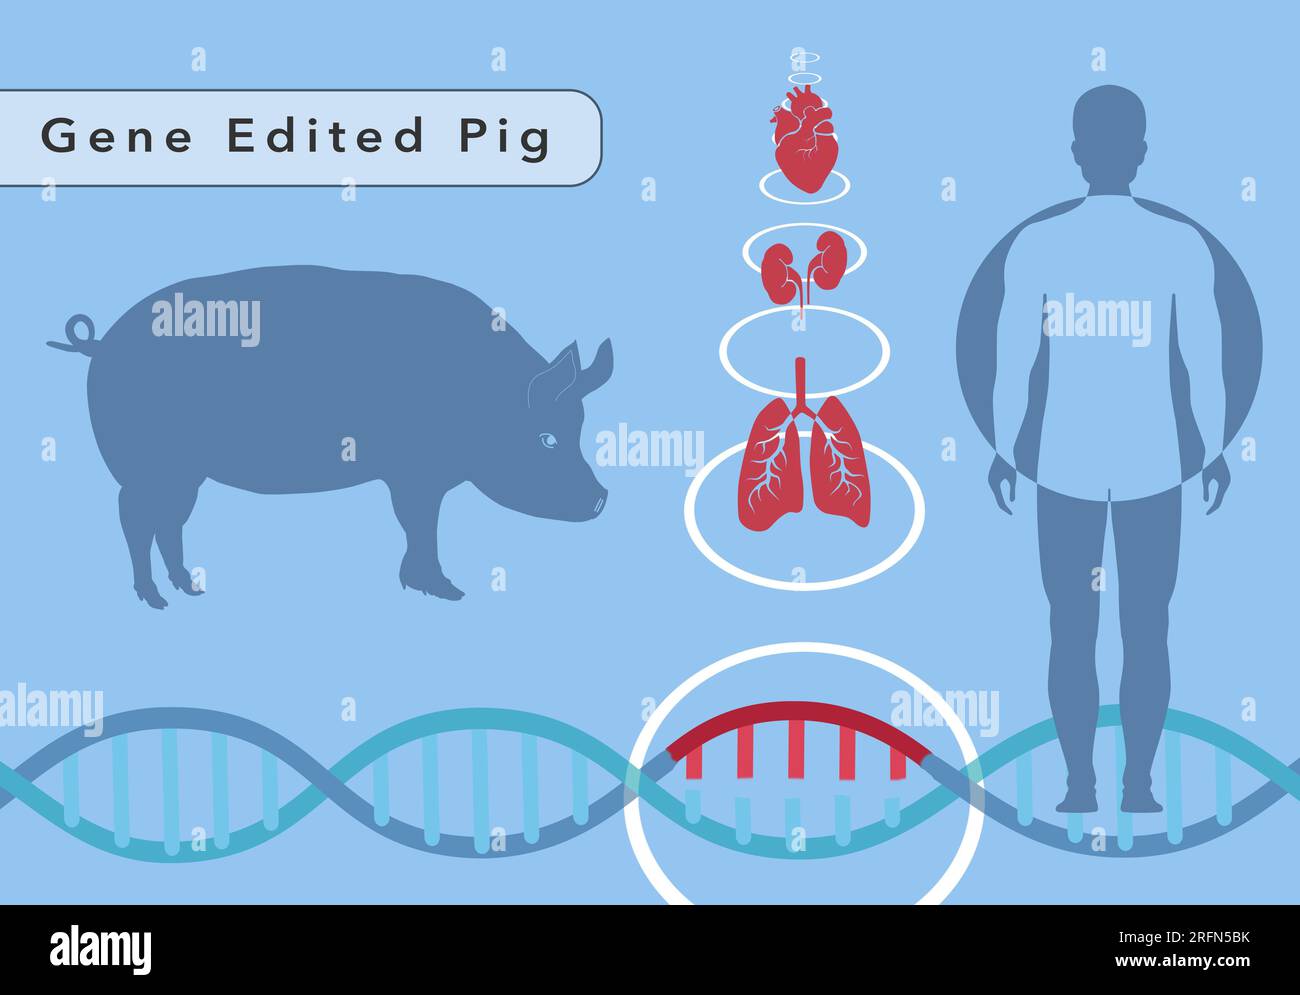 Eine Illustration eines Schweines, das mit dem Genbearbeitungstool CRISPR bearbeitet wurde, um Organe für den Menschen zu züchten. Organe umfassen Herz, Lunge und Nieren. Stockfoto